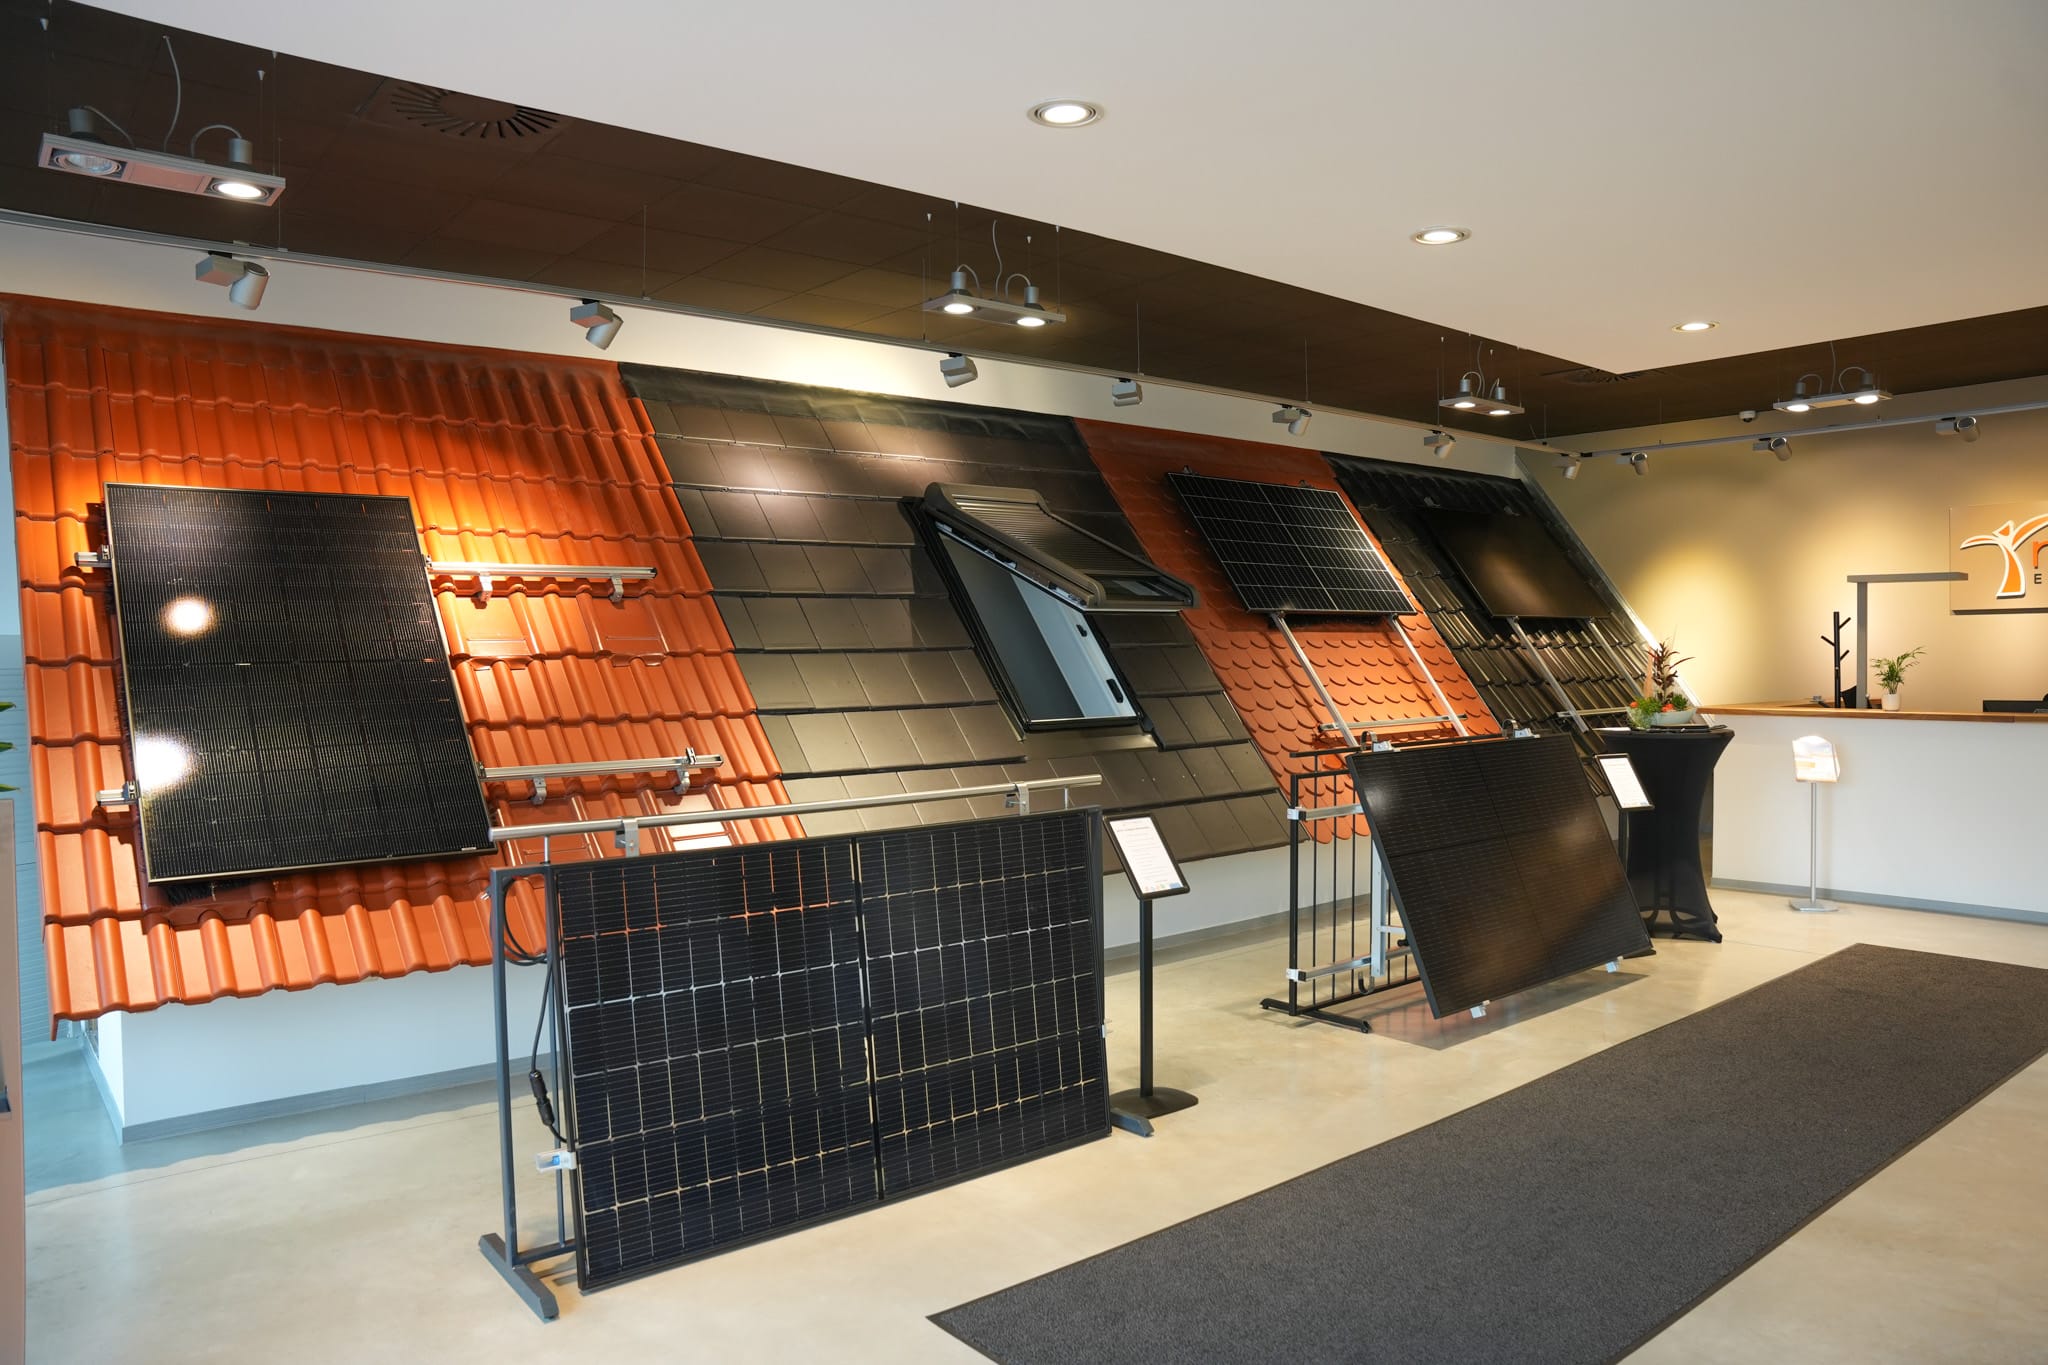 Musterdach mit Solarmodulen in Photovoltaikausstellung in Bruchköbel.